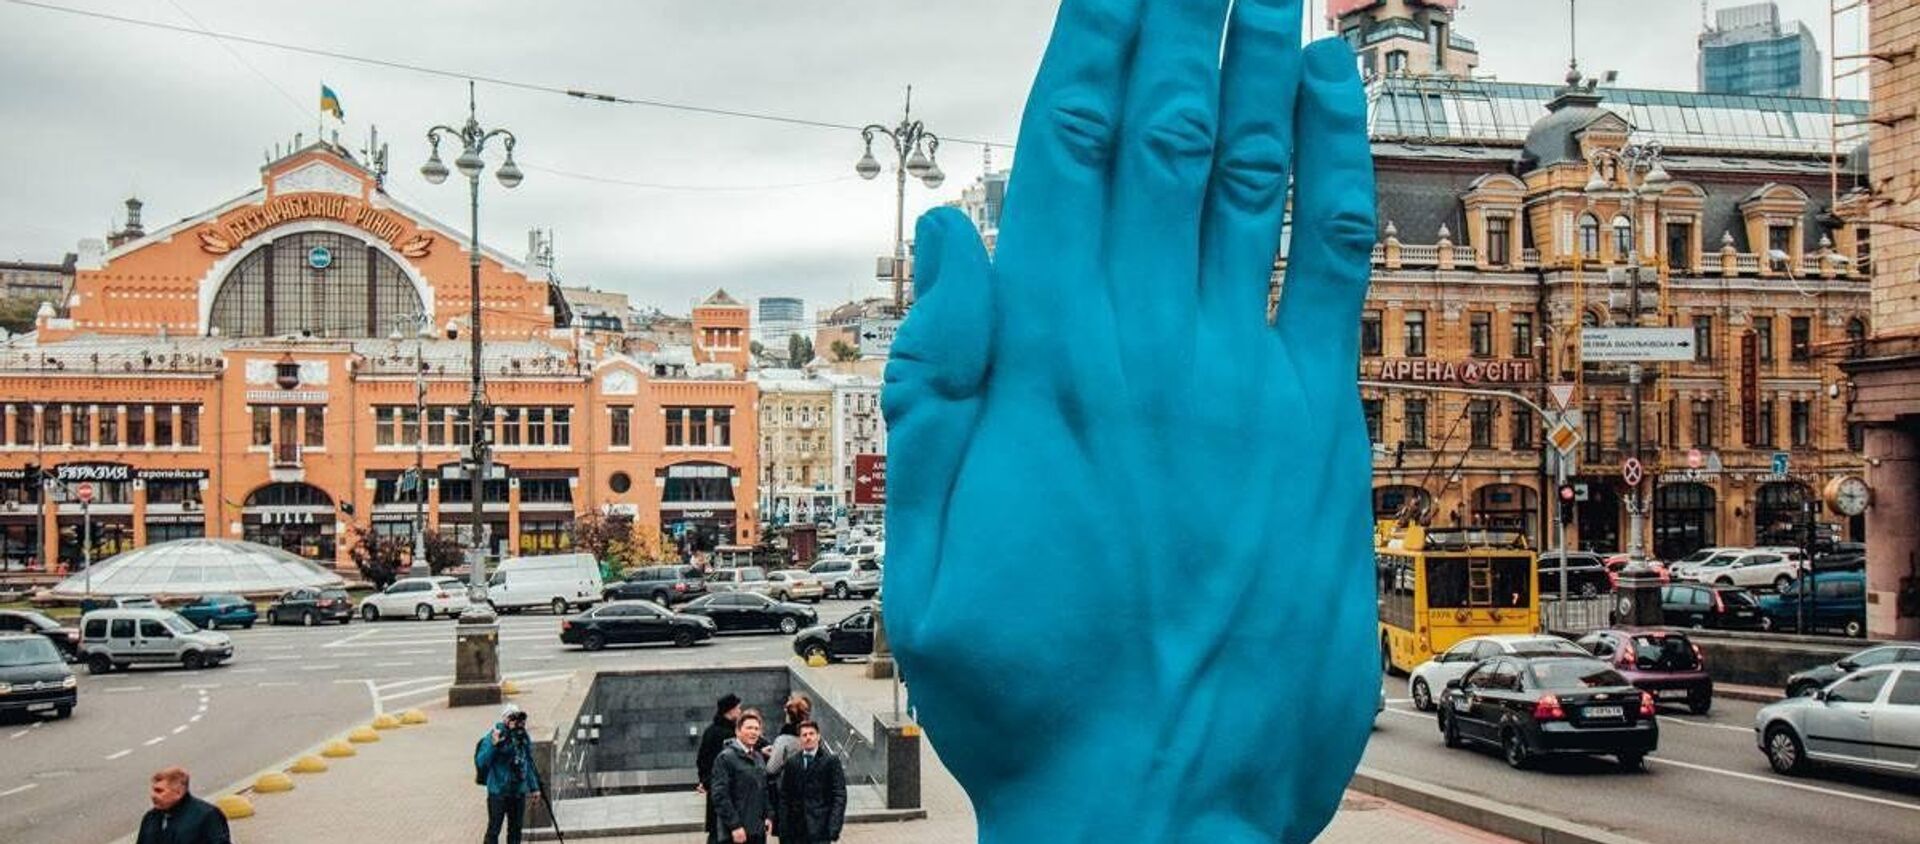 Một cánh tay lớn màu xanh xuất hiện ở Kiev, tại nơi trước kia là tượng đài Lenin - Sputnik Việt Nam, 1920, 27.09.2018